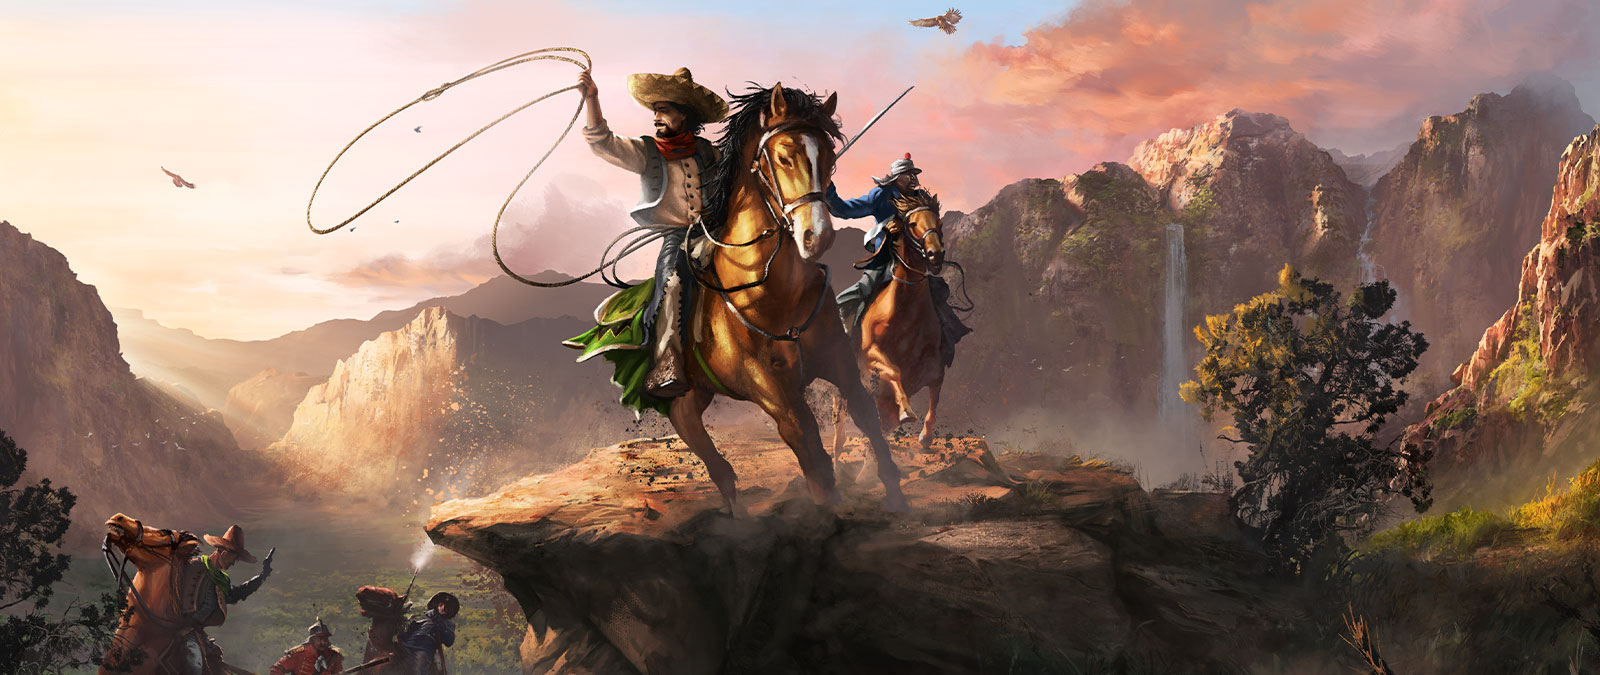 Dos personajes montados a caballo en un gran valle llevan un lazo y una espada.